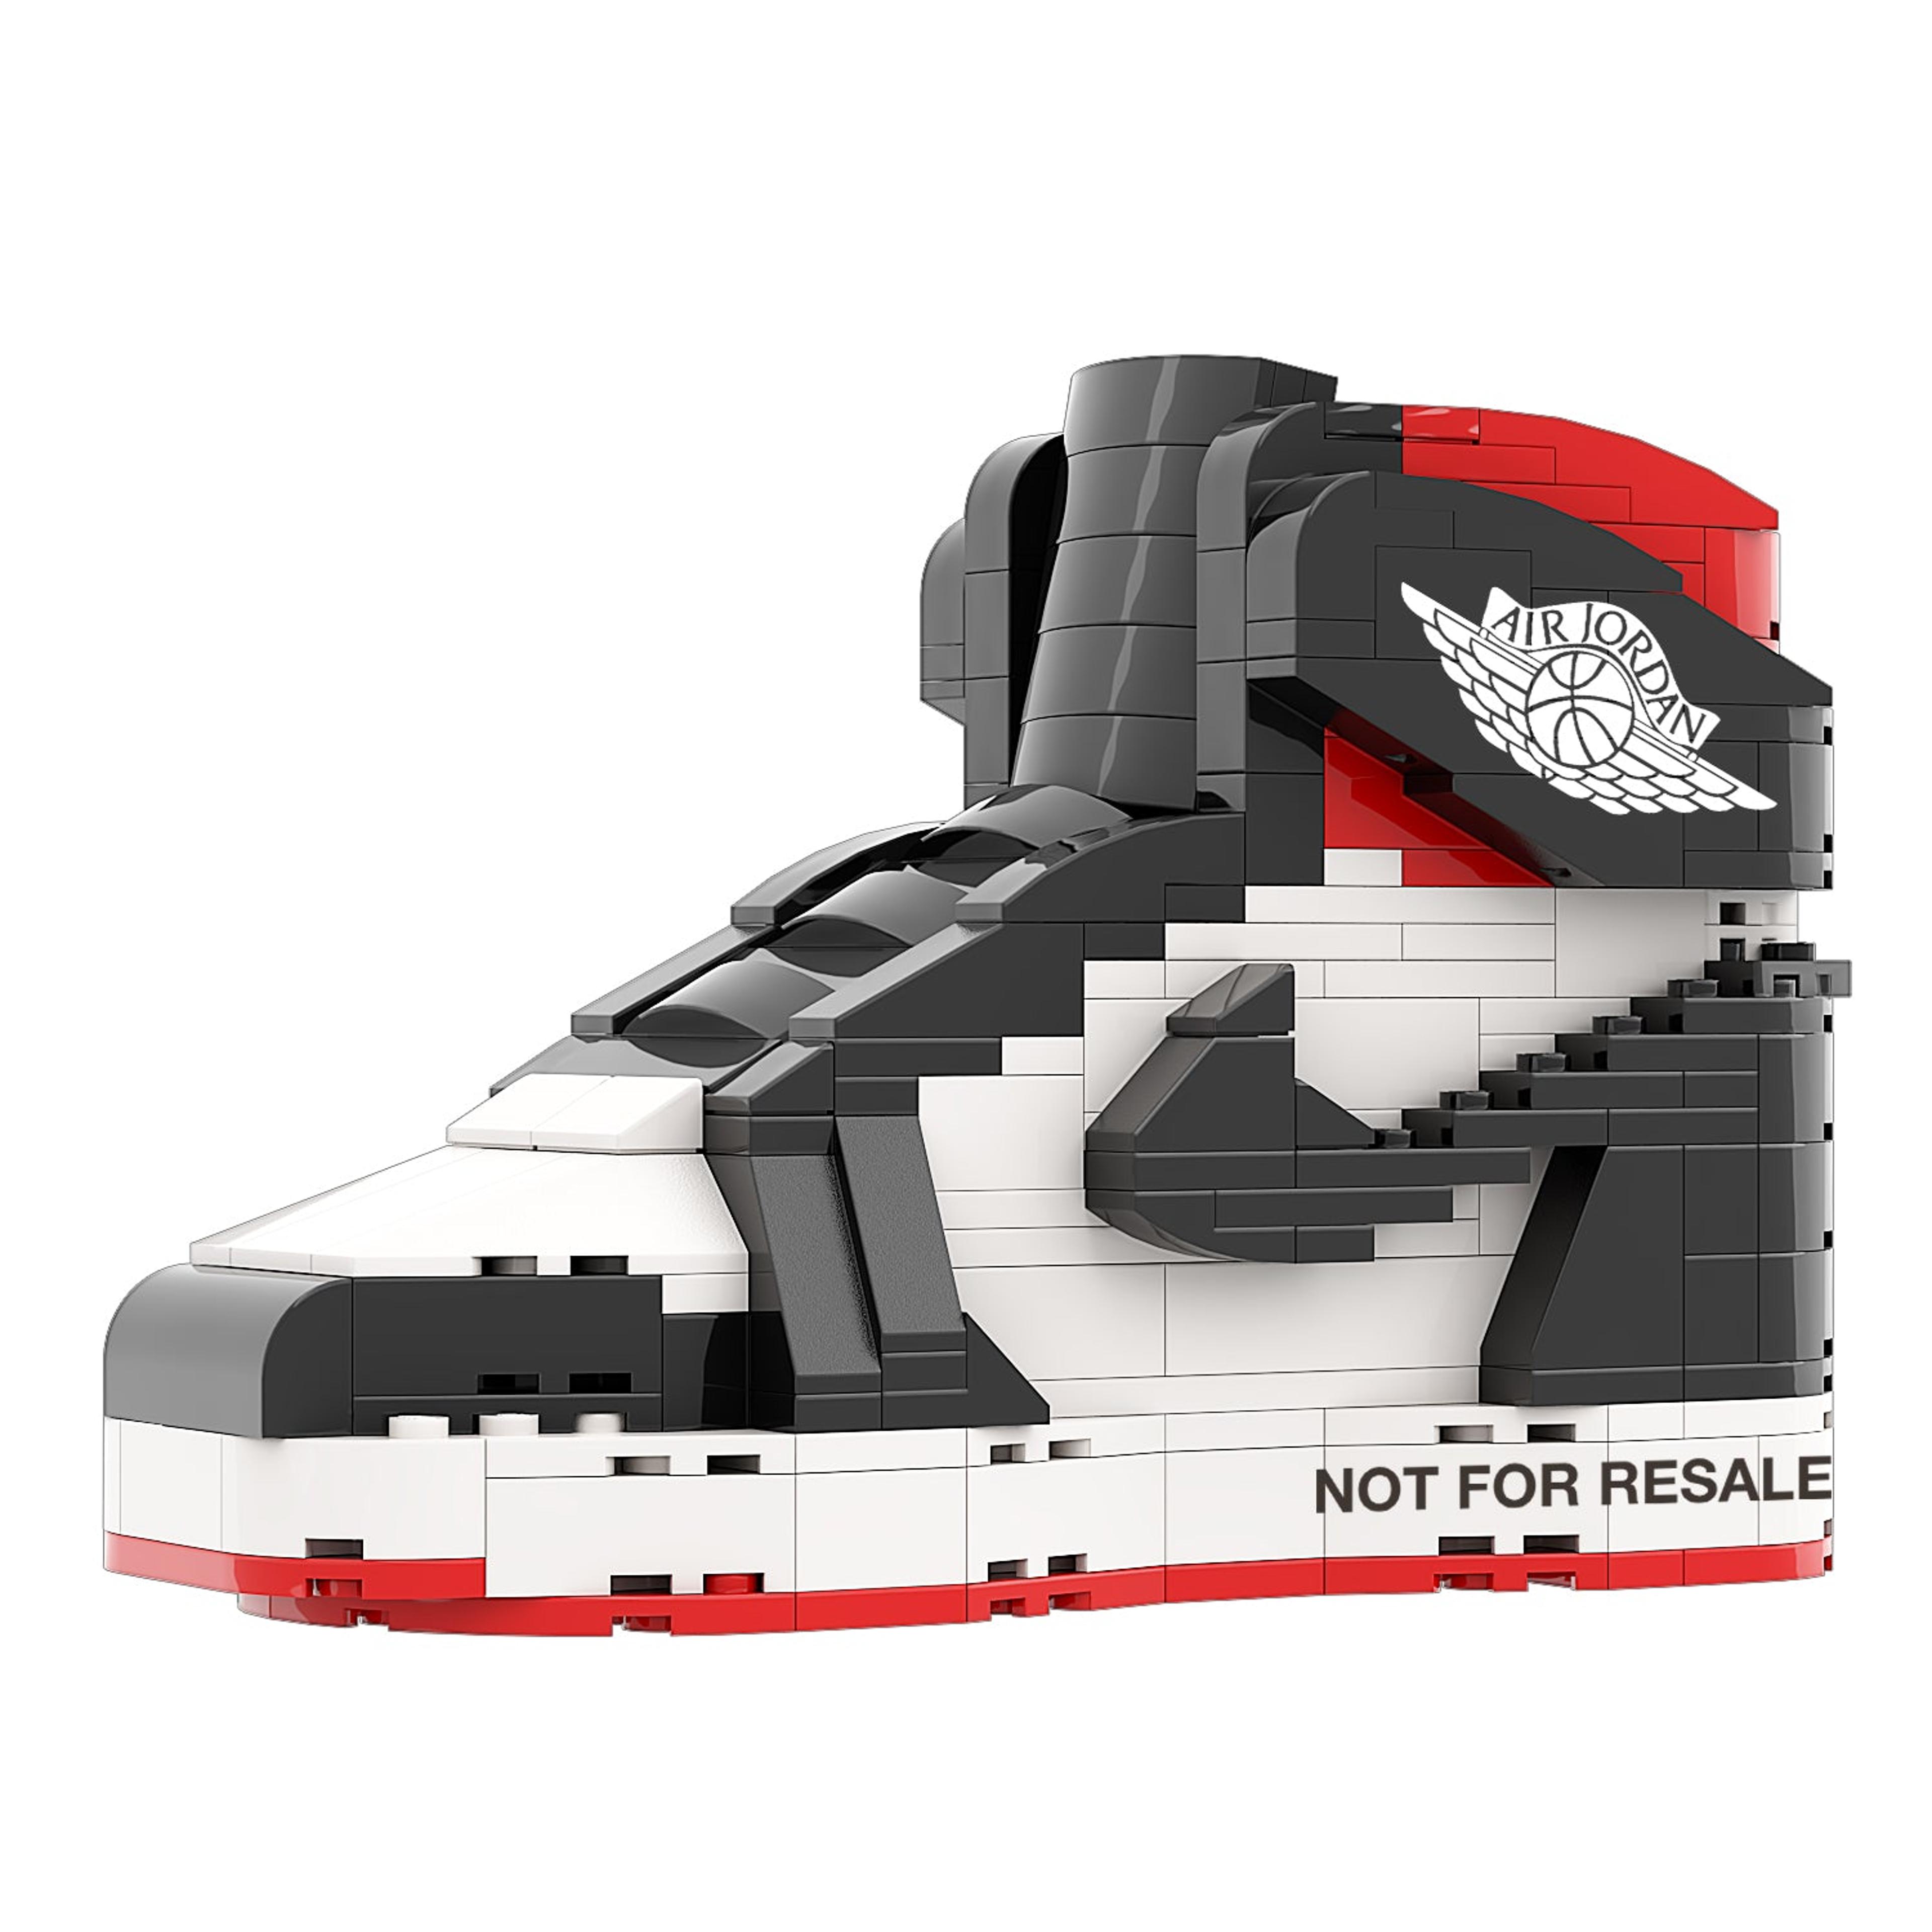 REGULAR "AJ1 NOT FOR RESALE Varsity Red" Sneaker Bricks with Min